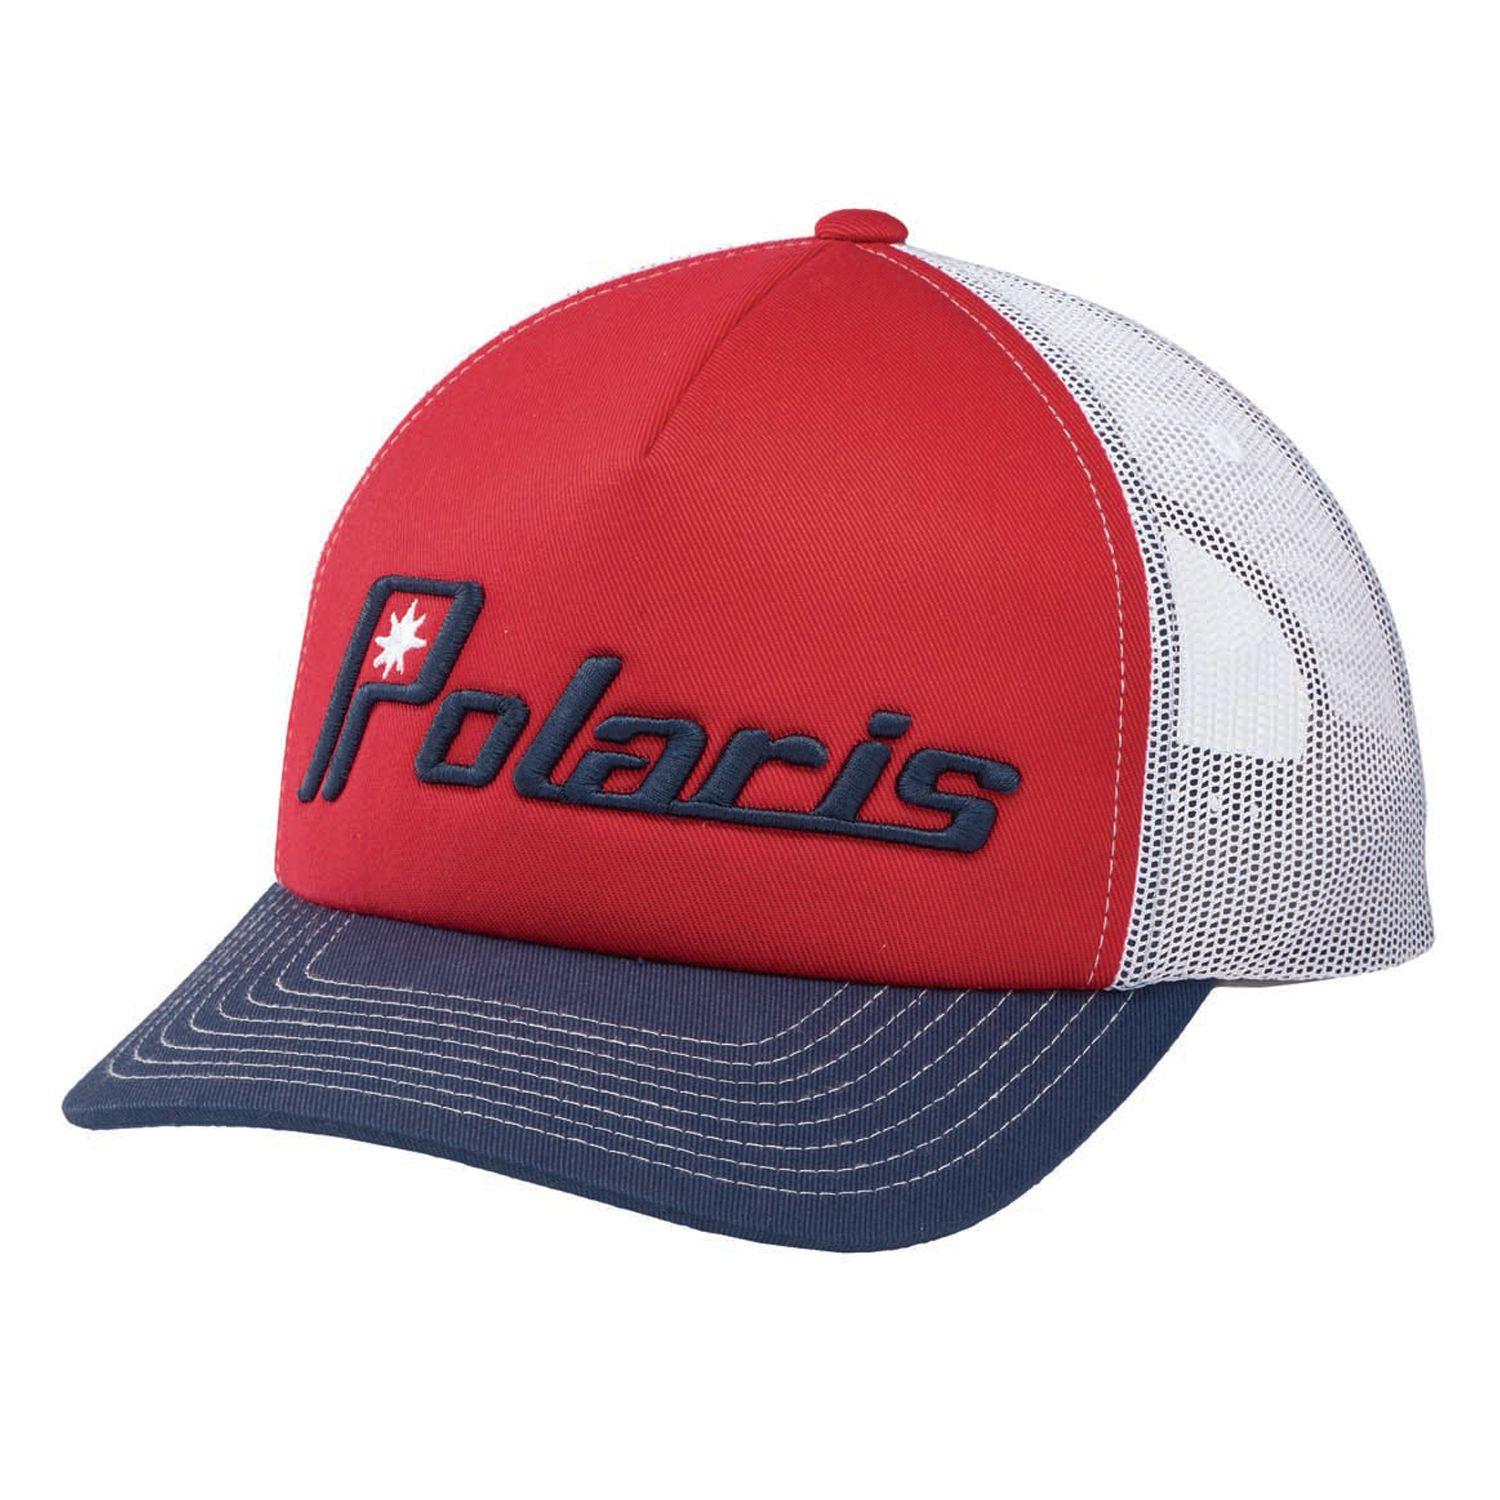 Ellipse Logo - Unisex Adjustable Mesh Snapback Hat with Retro Polaris® Ellipse Logo